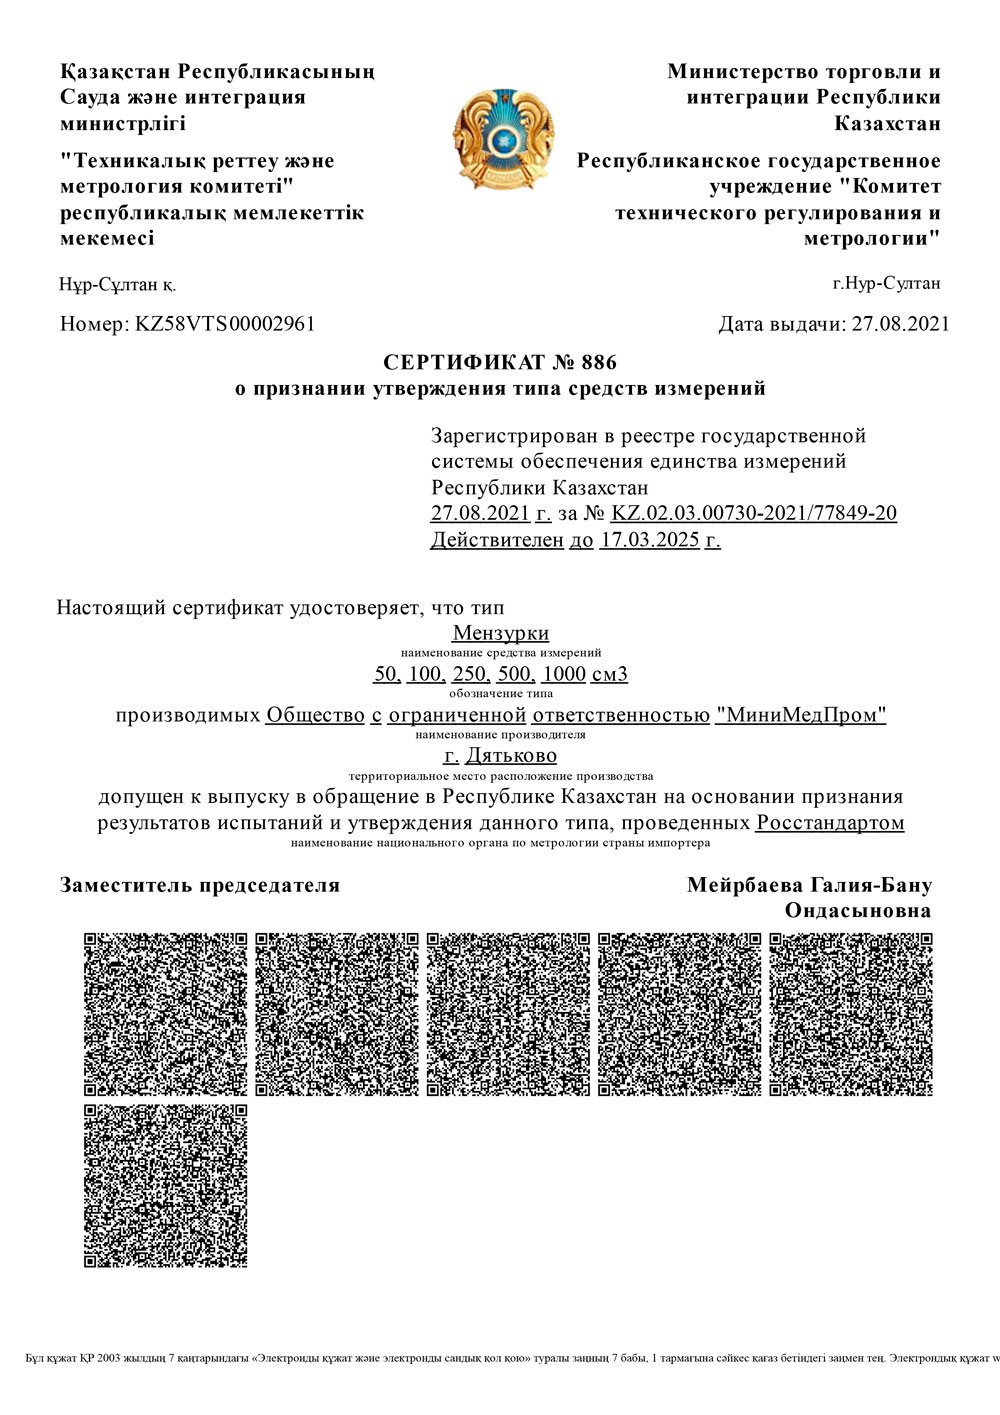 Мензурки-ММП.-Казахский-Сертификат-о-признании-утверждения-ТСИ.